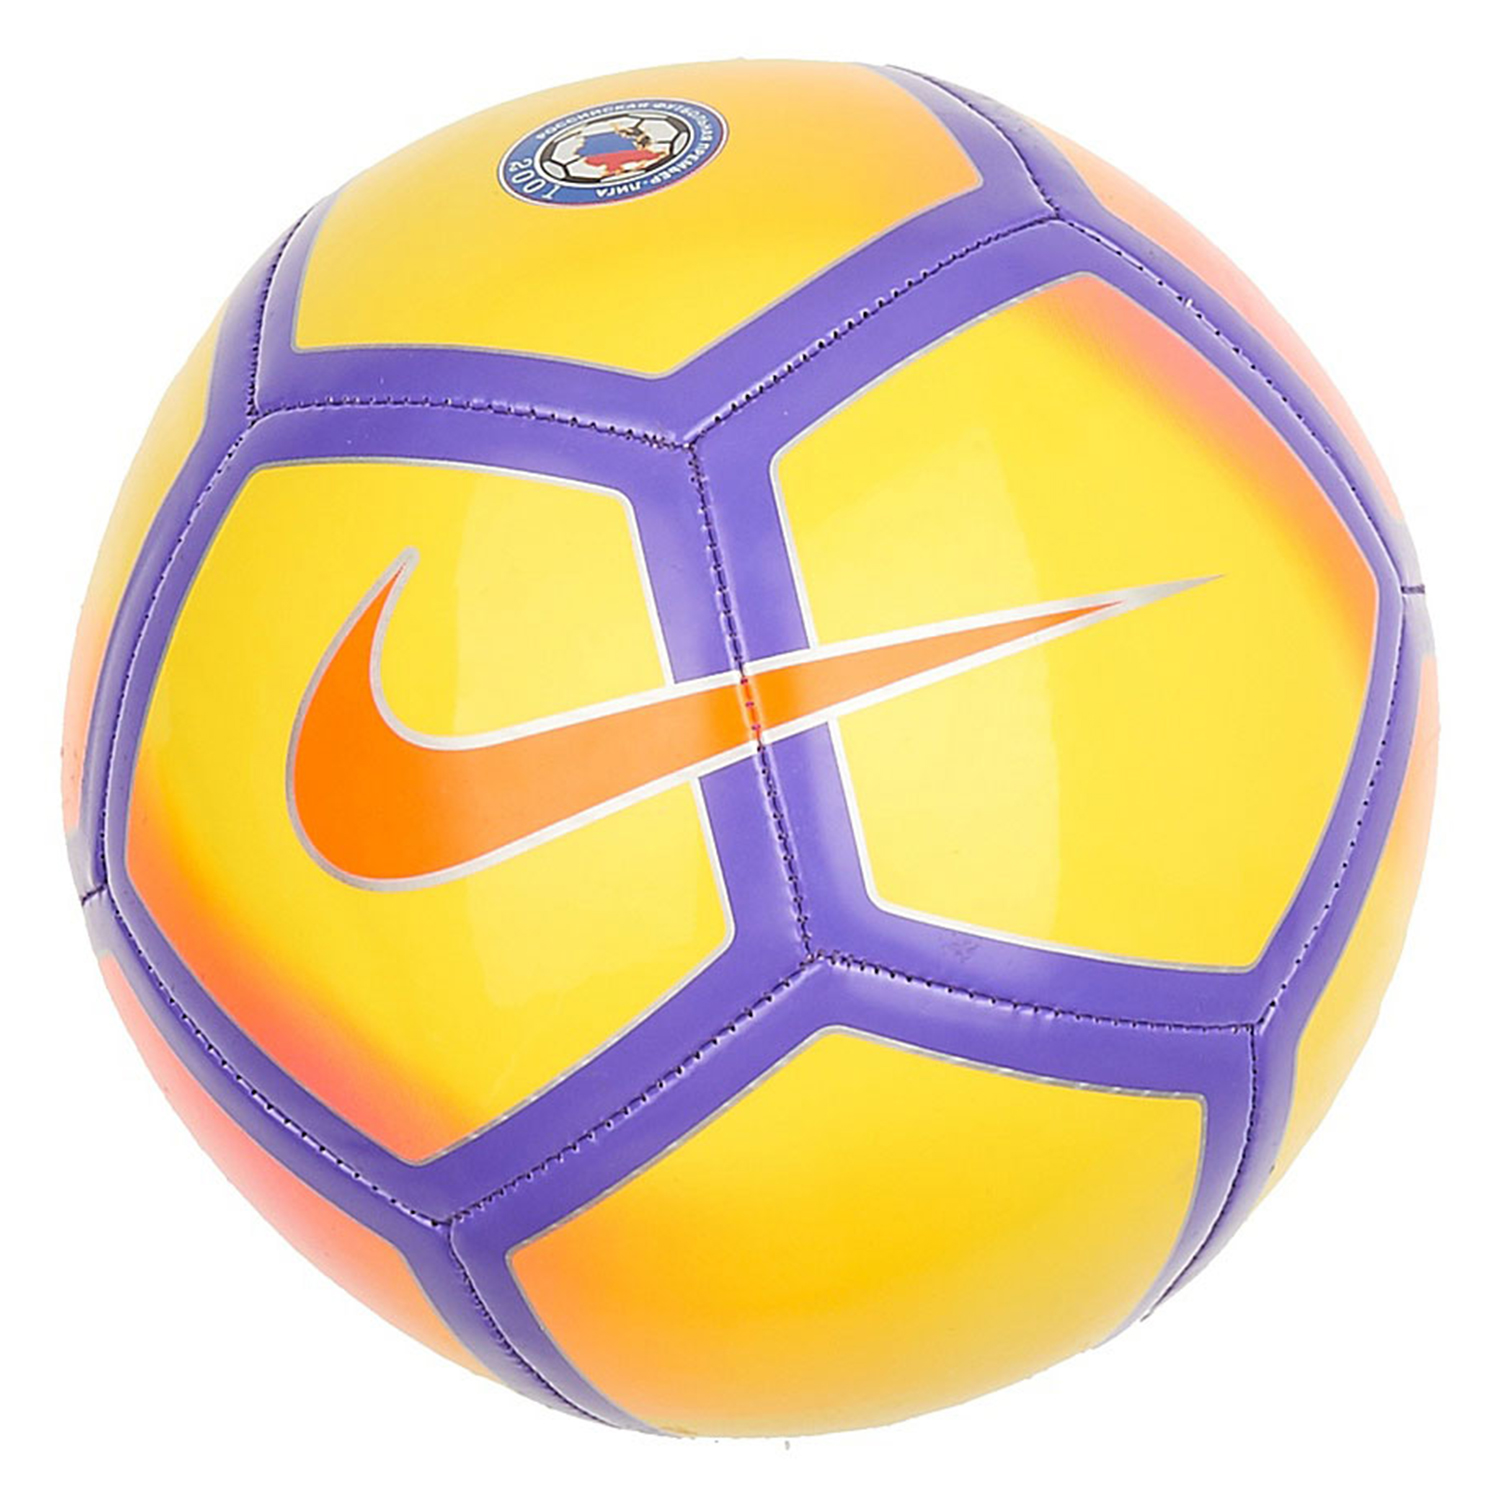 Купить мяч в спортмастере. Мяч Nike RPL. Мяч найк РПЛ. Мяч Nike 2001. Жёлтый мяч Nike RPL.